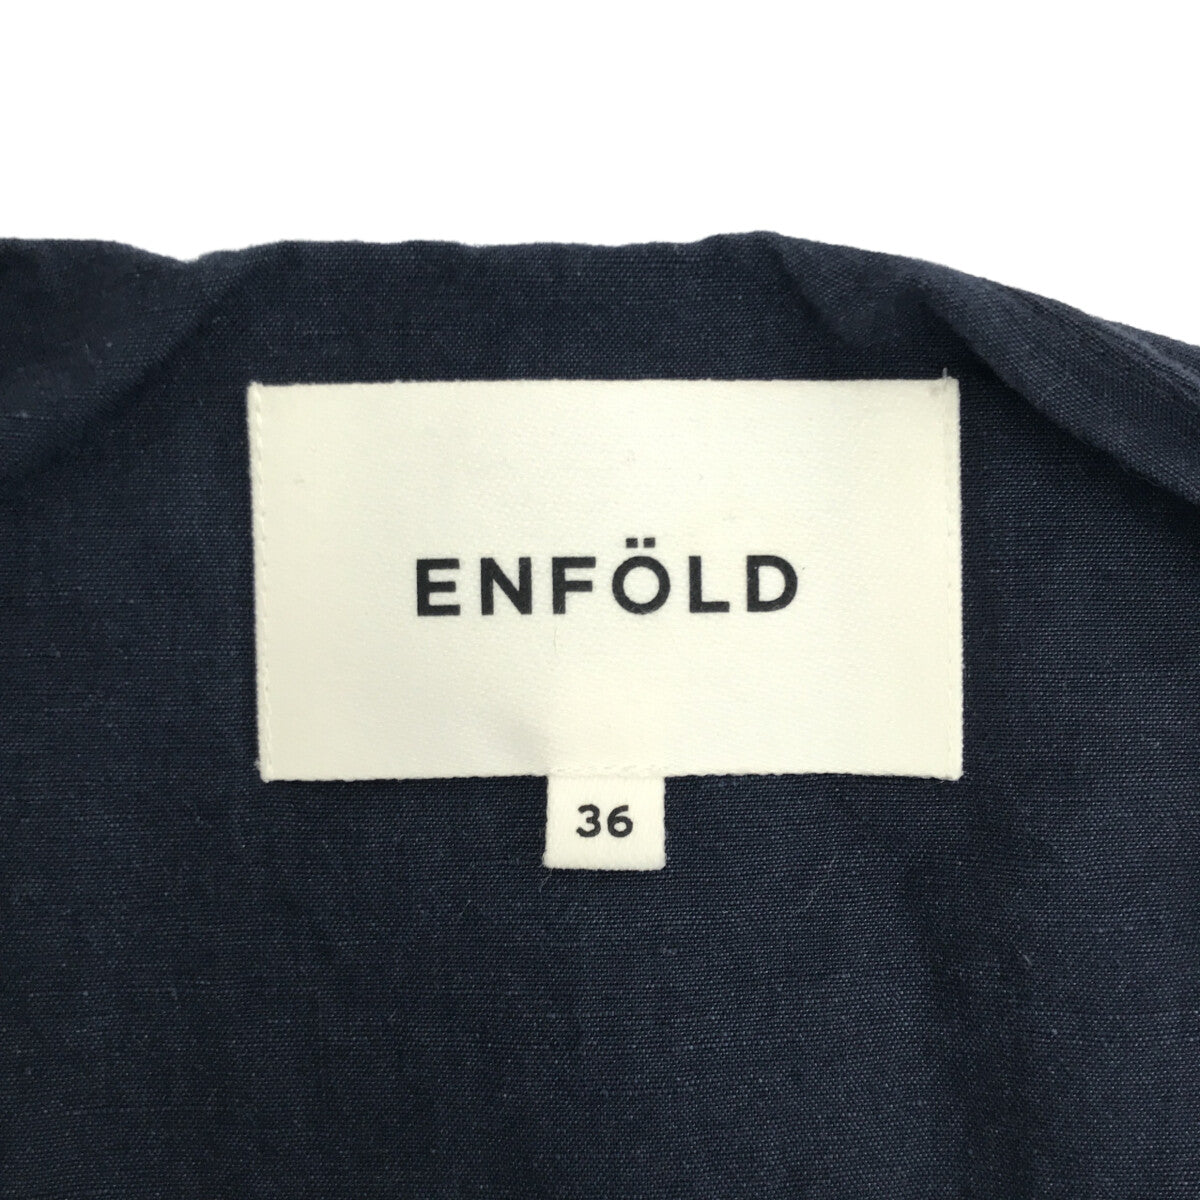 ENFOLD / エンフォルド | ペーパーリネンノーカラーコート | 36 